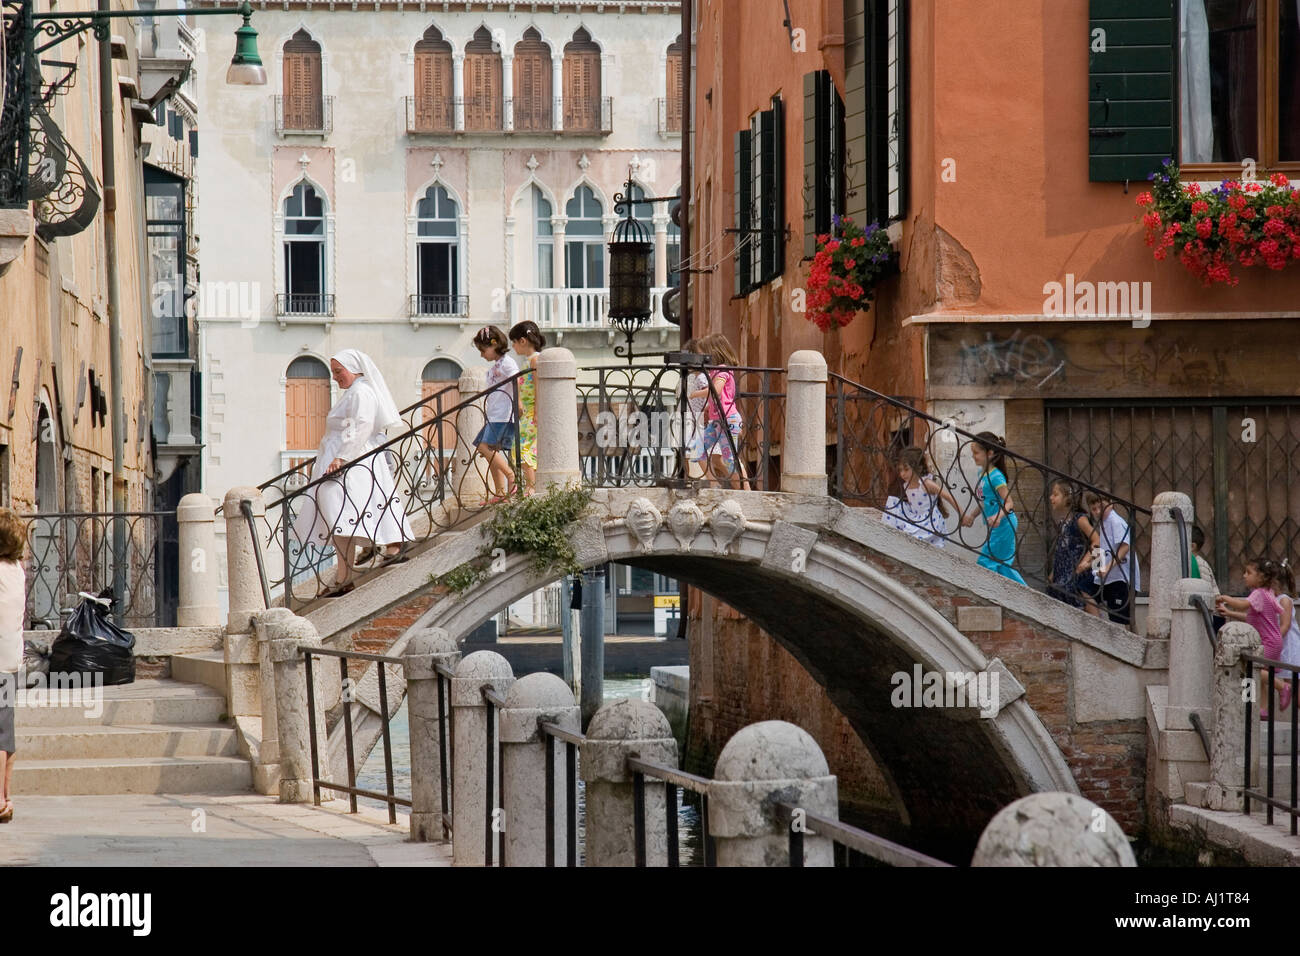 Coppie di scuola bambini holding hands seguire nun indossando abito bianco su un ponte sul canal sestiere di Dorsoduro di Venezia Foto Stock